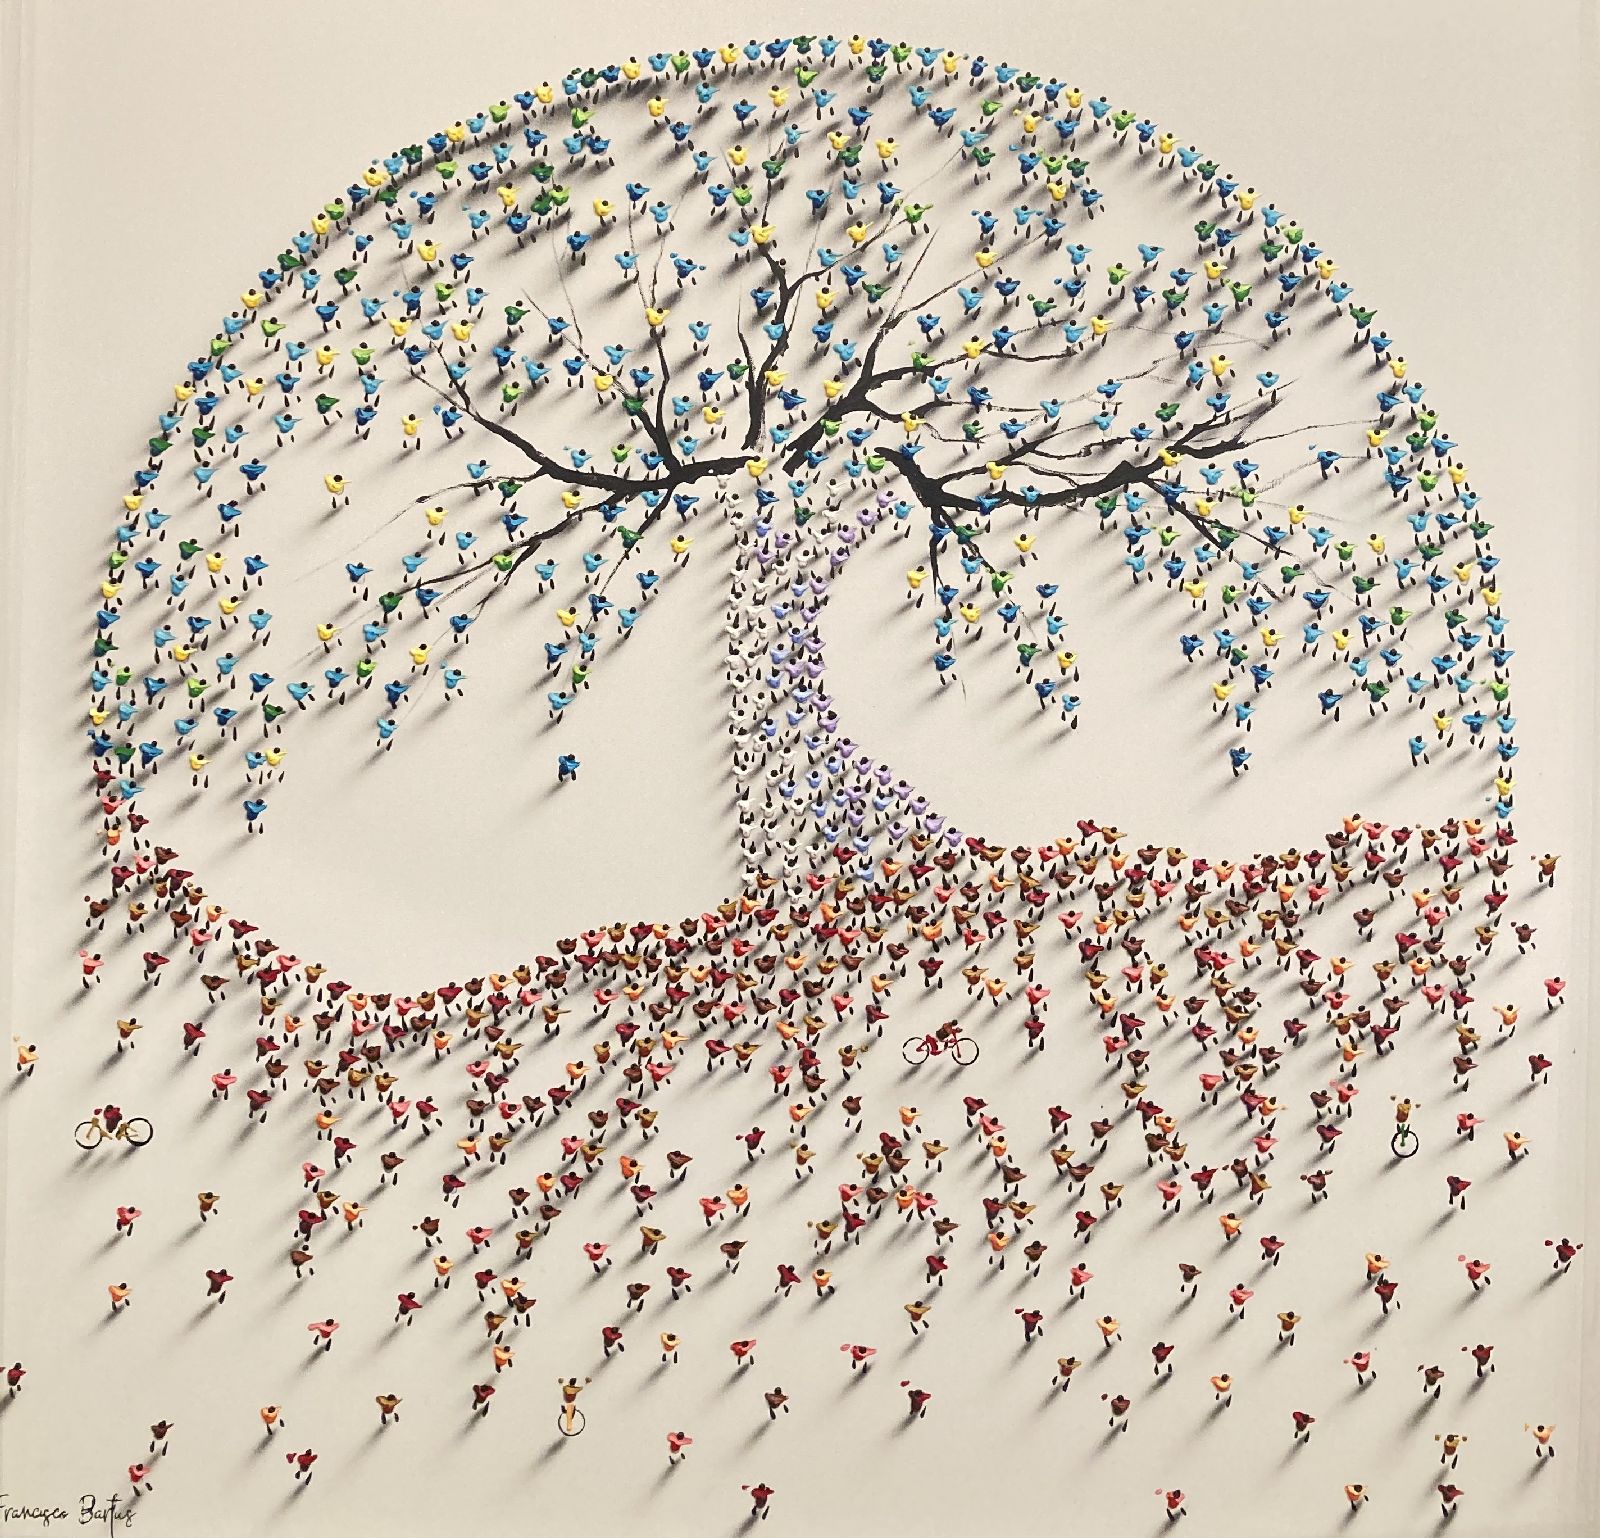 Francisco Bartus - Tree of life 2